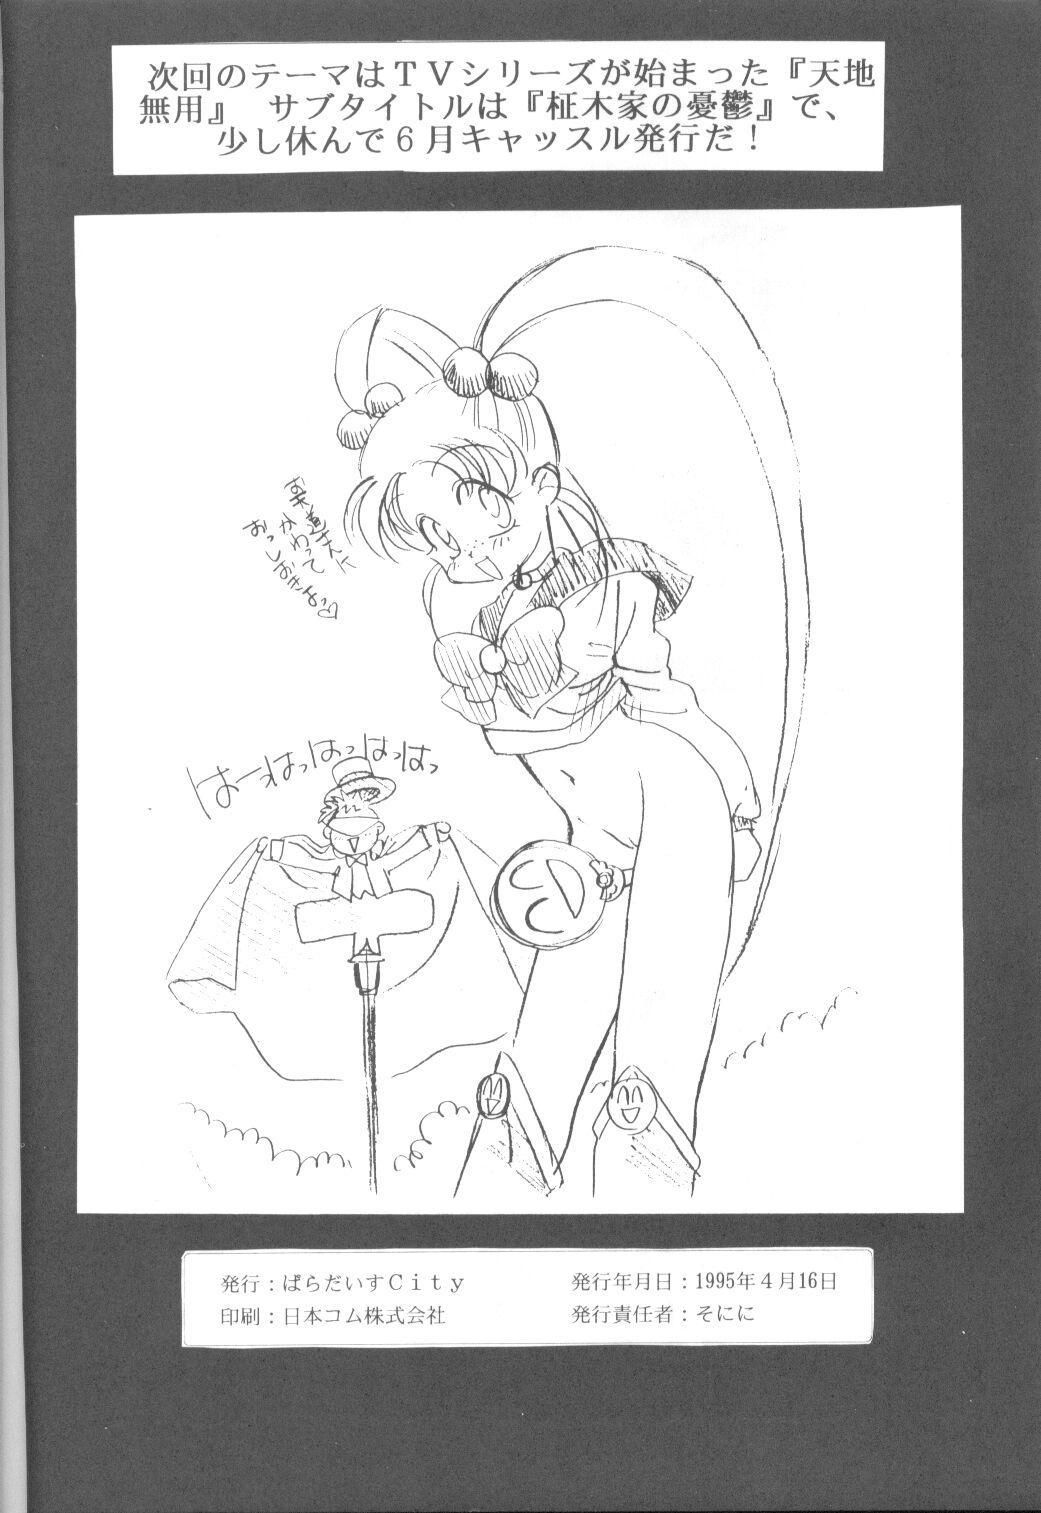 Tanned Tabeta Kigasuru 9 - Sailor moon Older - Page 55